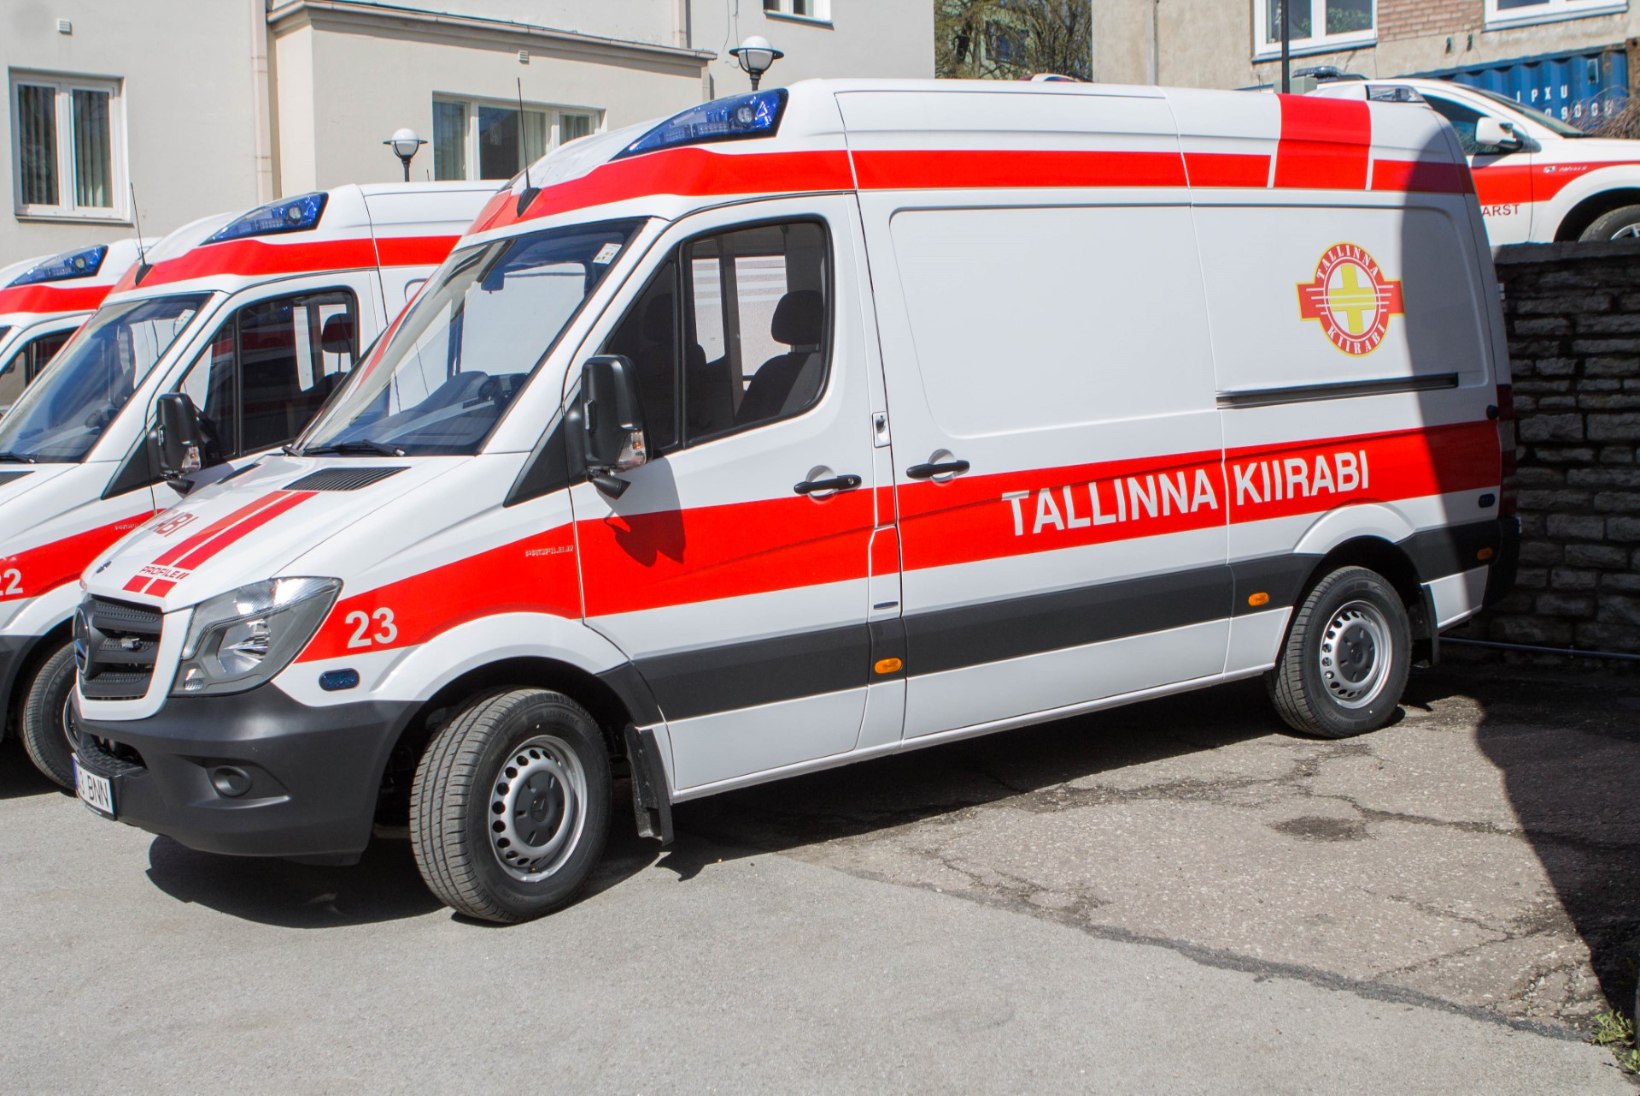 Tallinna kiirabi päästis 48 alajahtunu elu